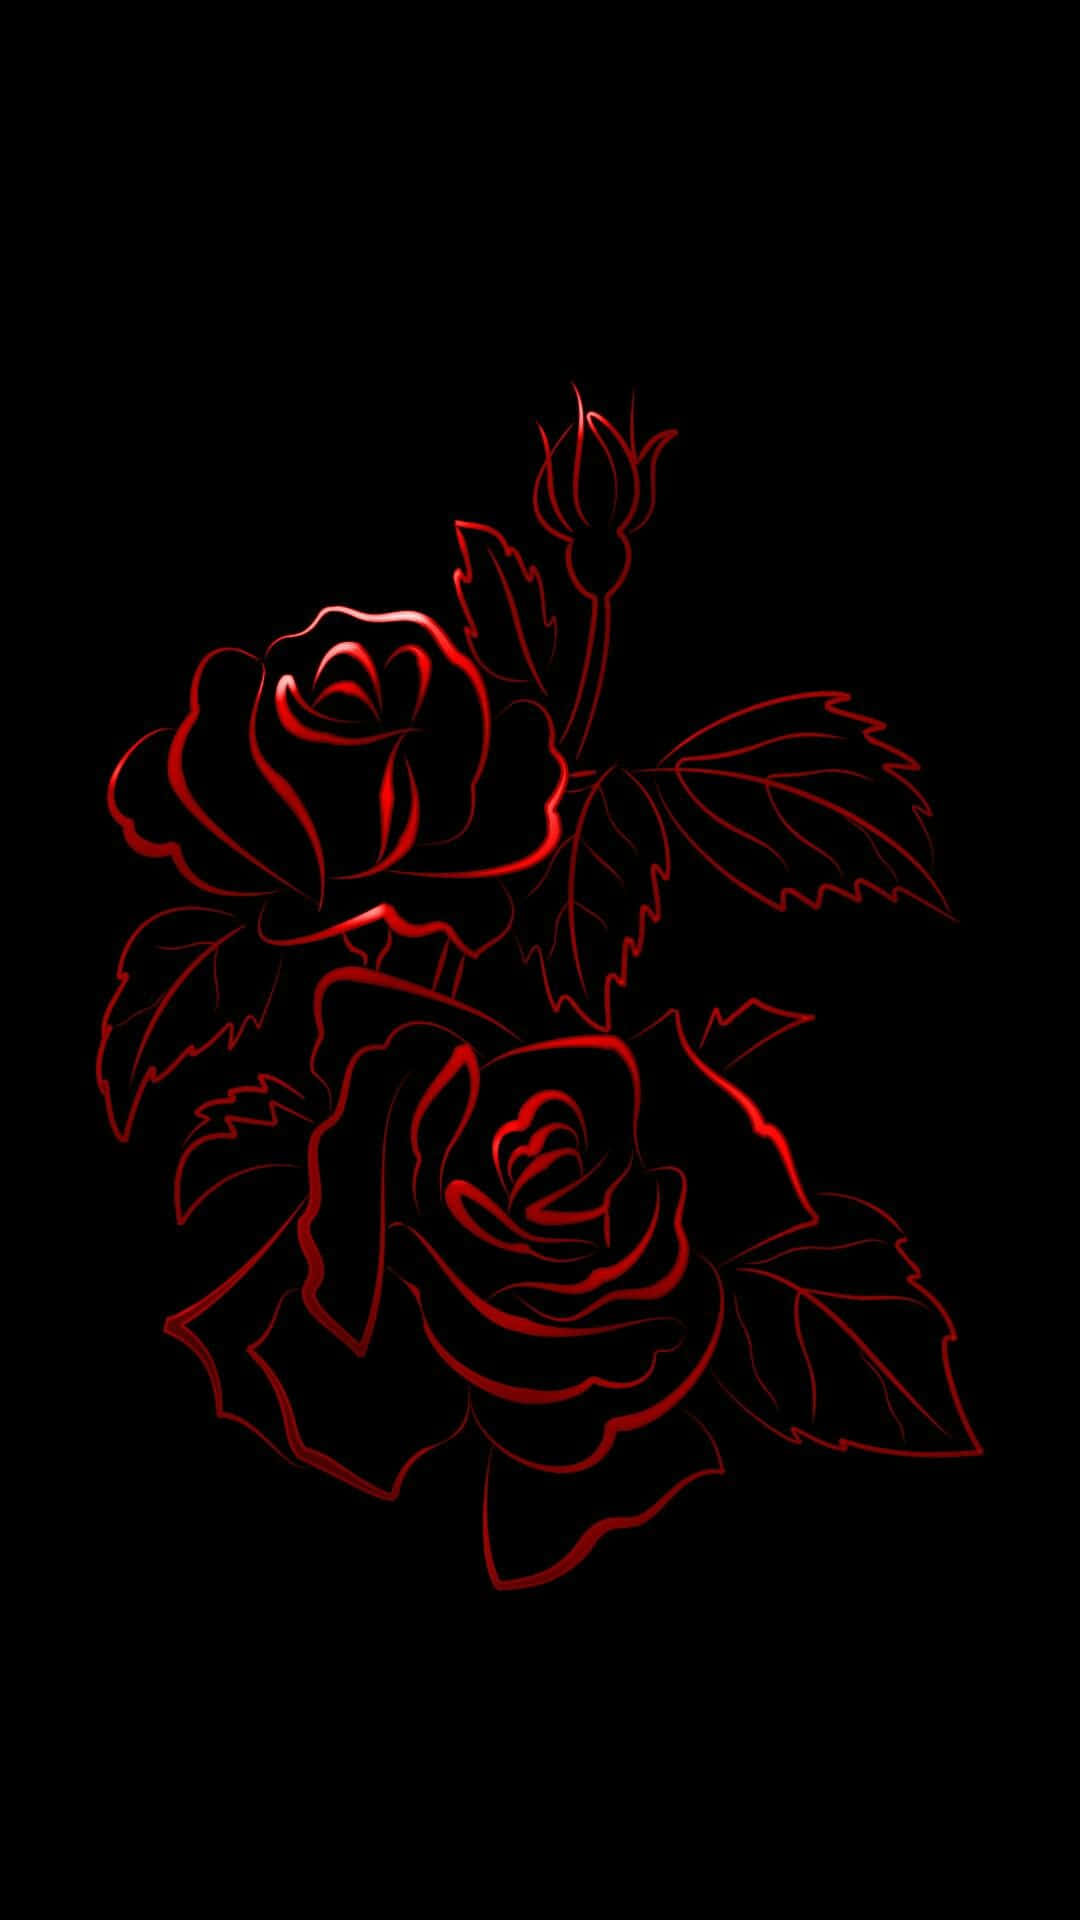 Patrónde Rosas En Una Imagen Oscura.